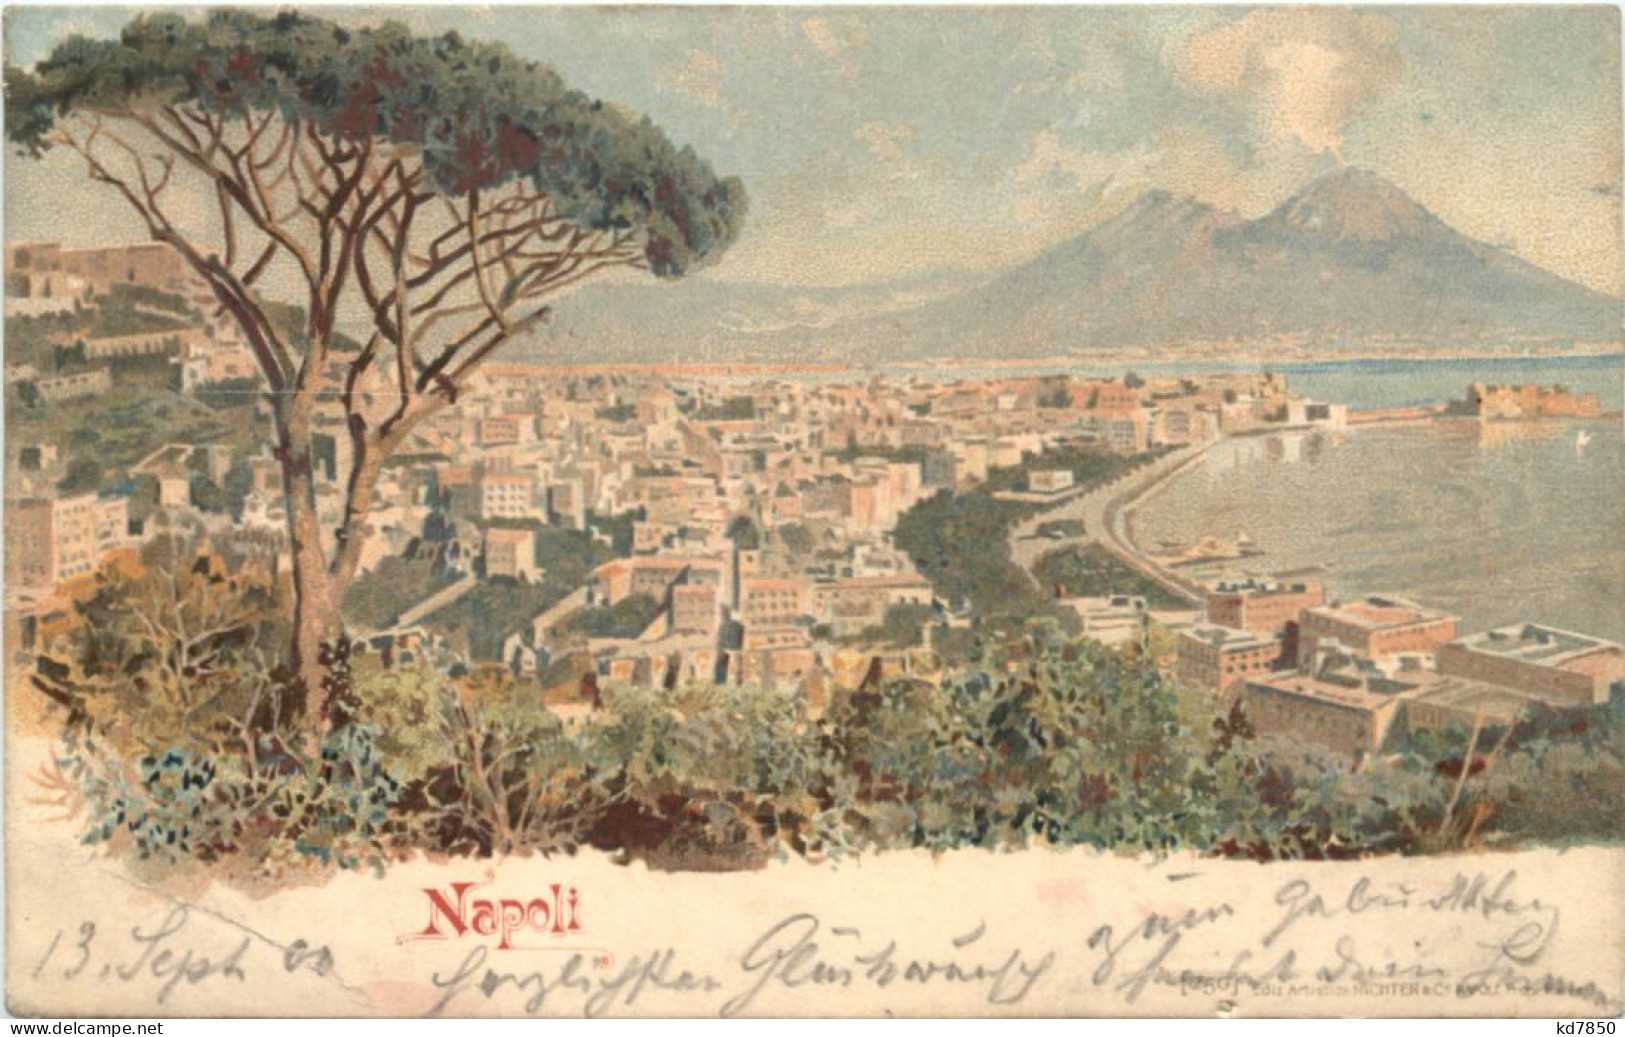 NApoli - Napoli (Napels)